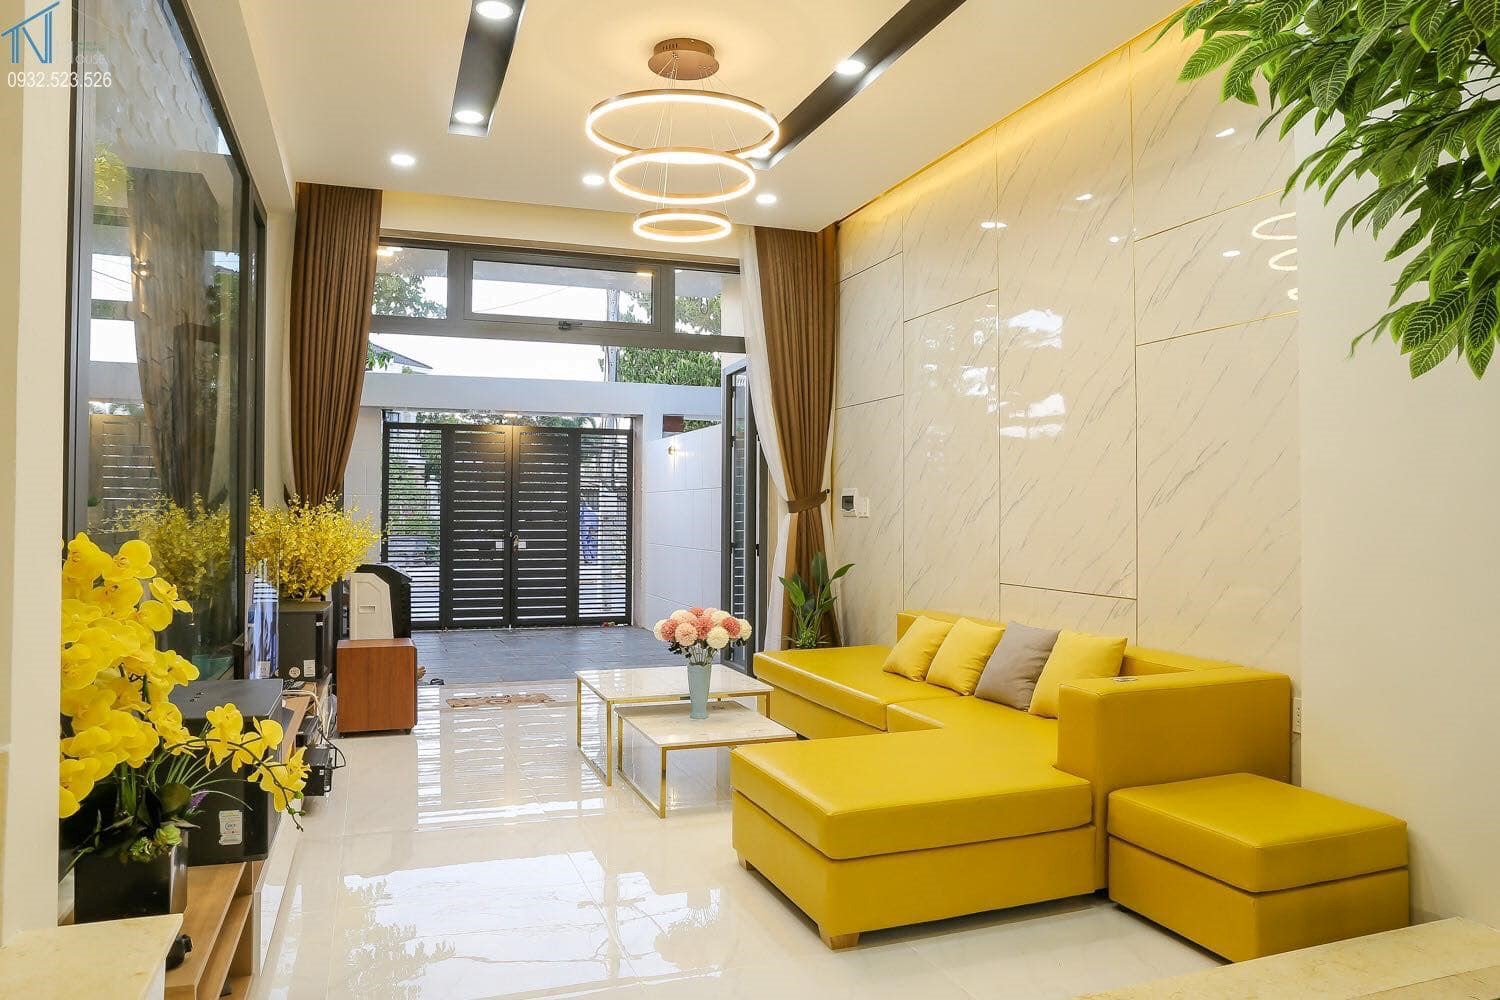 Phòng khách nhà cấp 4 cực bắt mắt với bộ ghế sofa màu vàng chanh tươi sáng, nổi bật trên phông nền màu trắng chủ đạo.